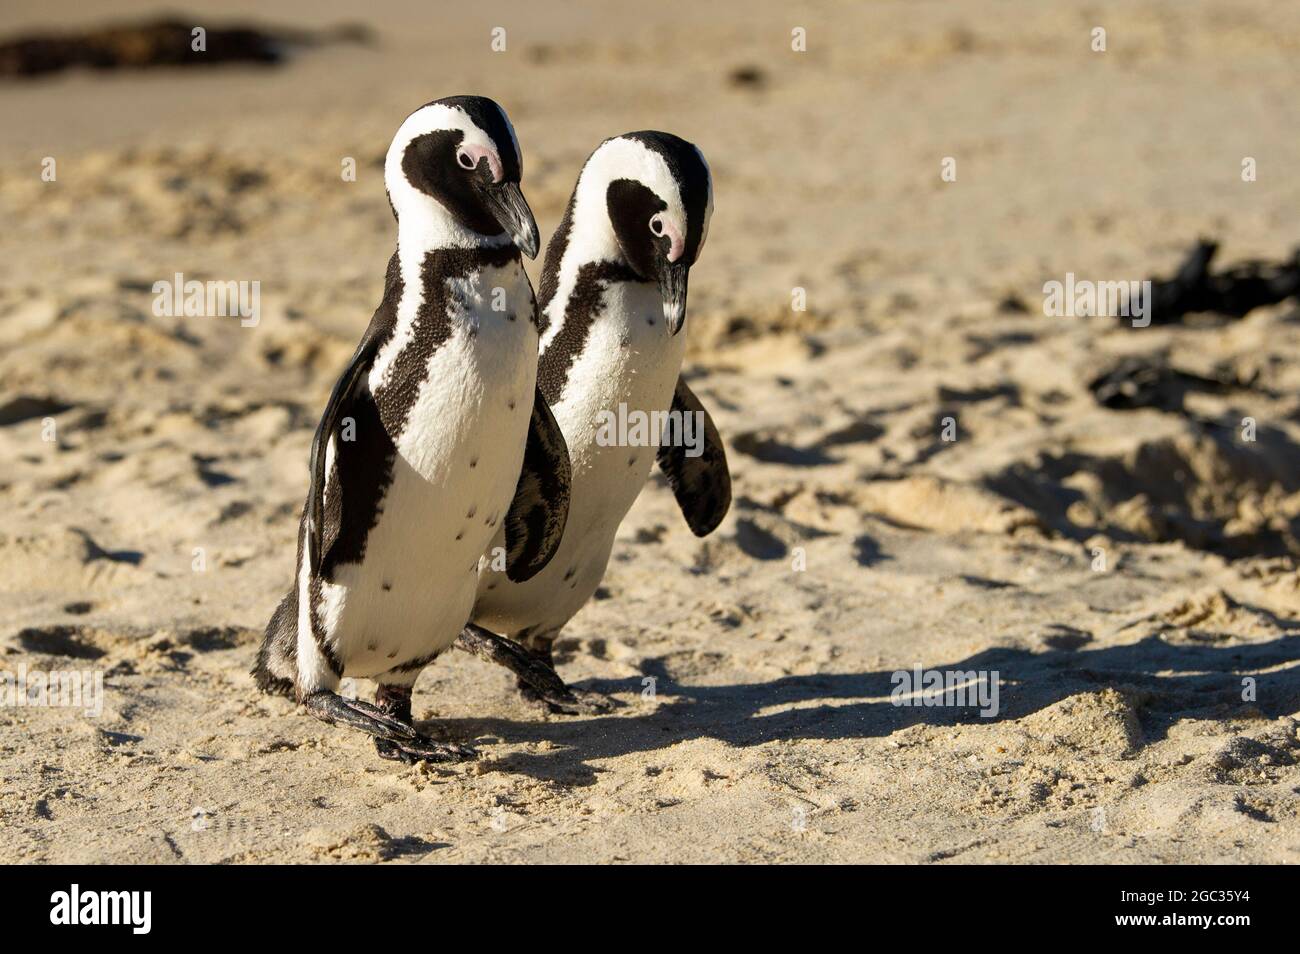 Los pingüinos africanos, Spheniscus demersus, la playa Boulders, Península del Cabo, Sudáfrica Foto de stock